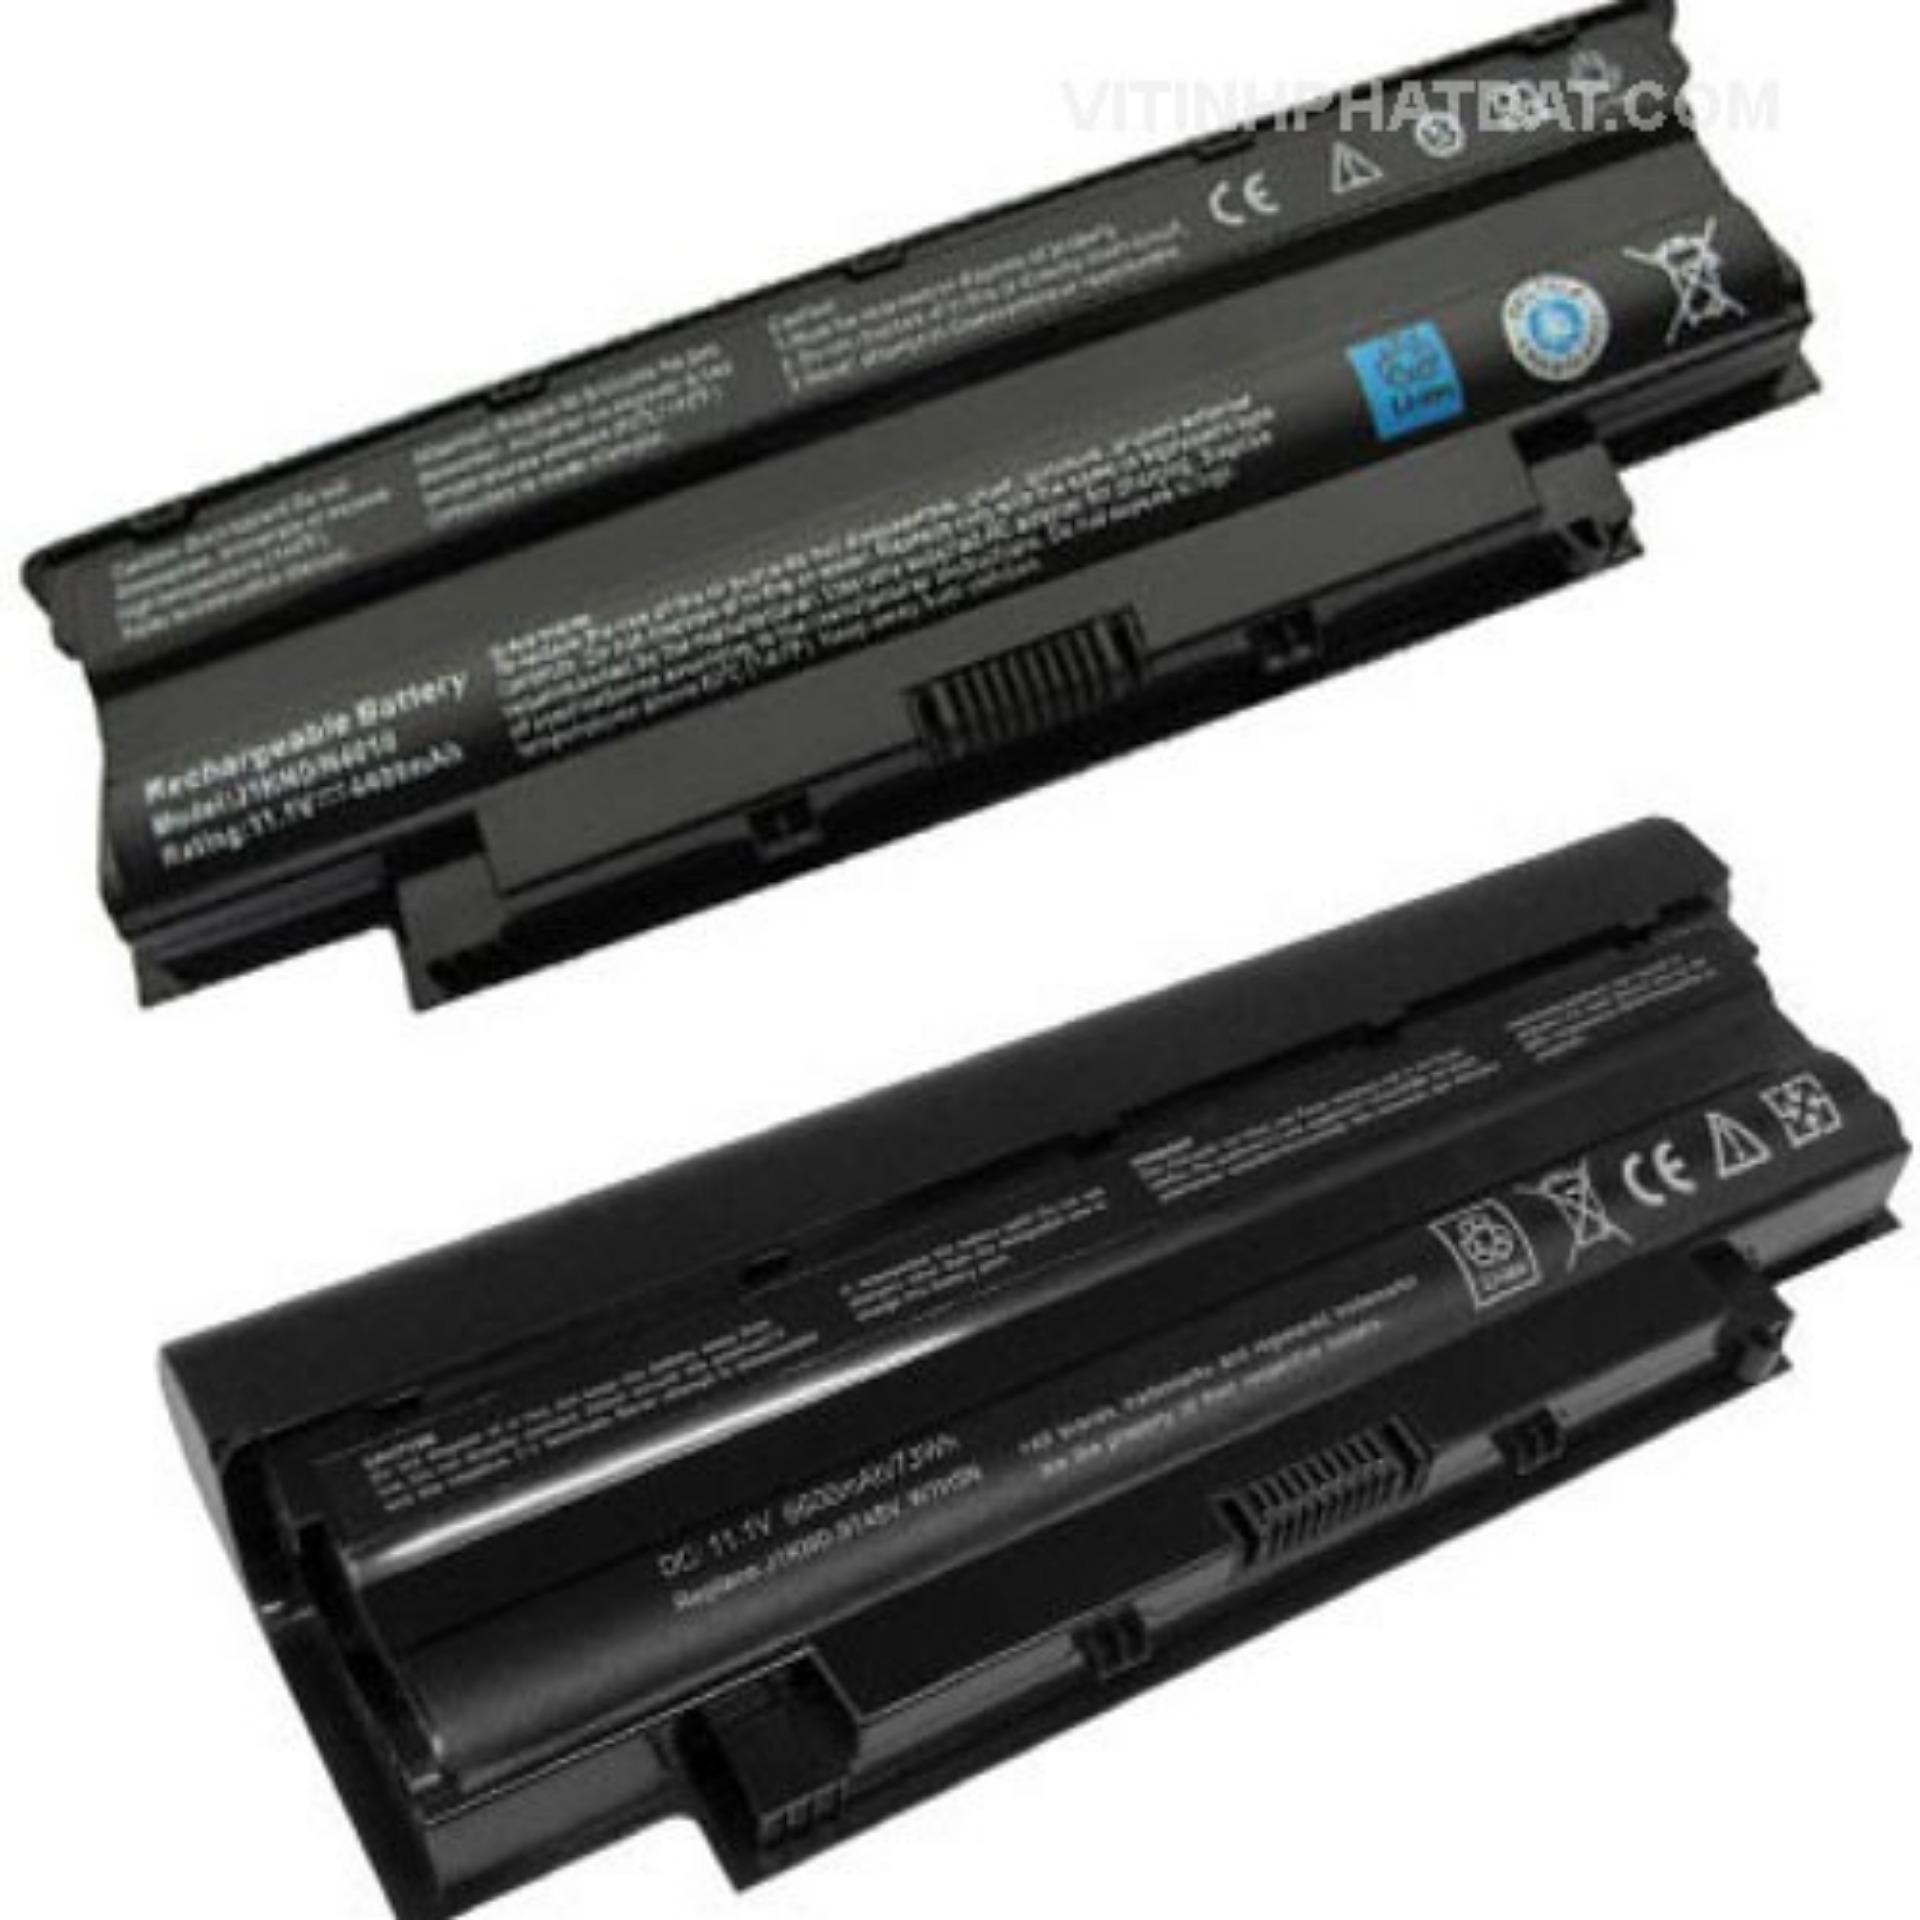 Pin laptop Dell Vostro 1440 1450 1540 1550 - Hàng nhập khẩu Giá Thì Ai củng mua được 12 tháng...